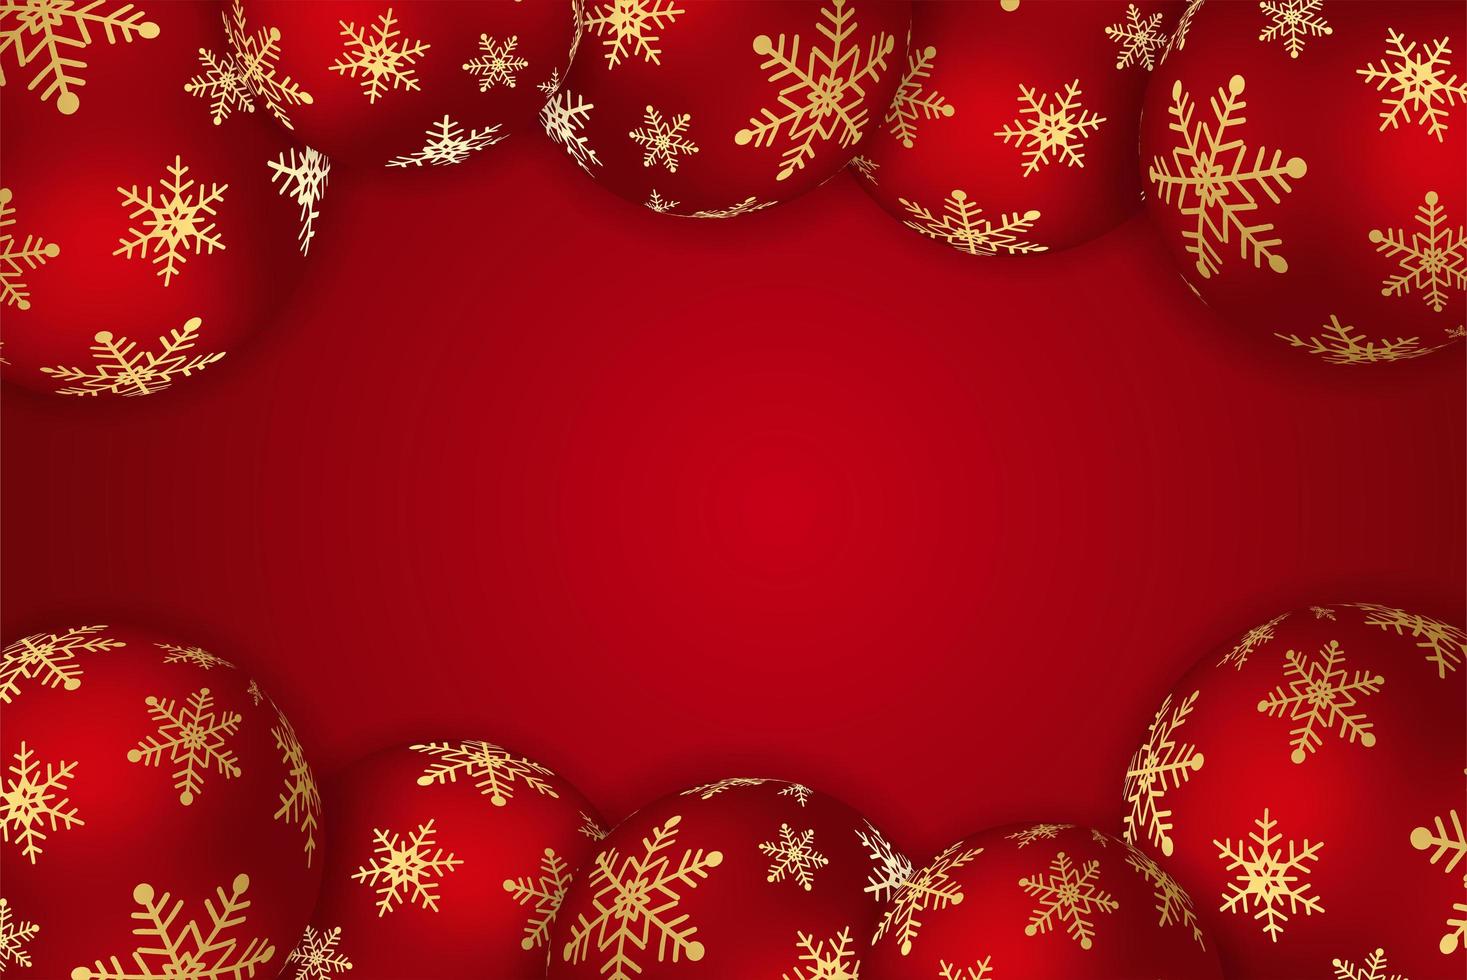 sfondo di natale con brillante palla rossa. Merry Christmas card illustrazione su sfondo rosso. vettore